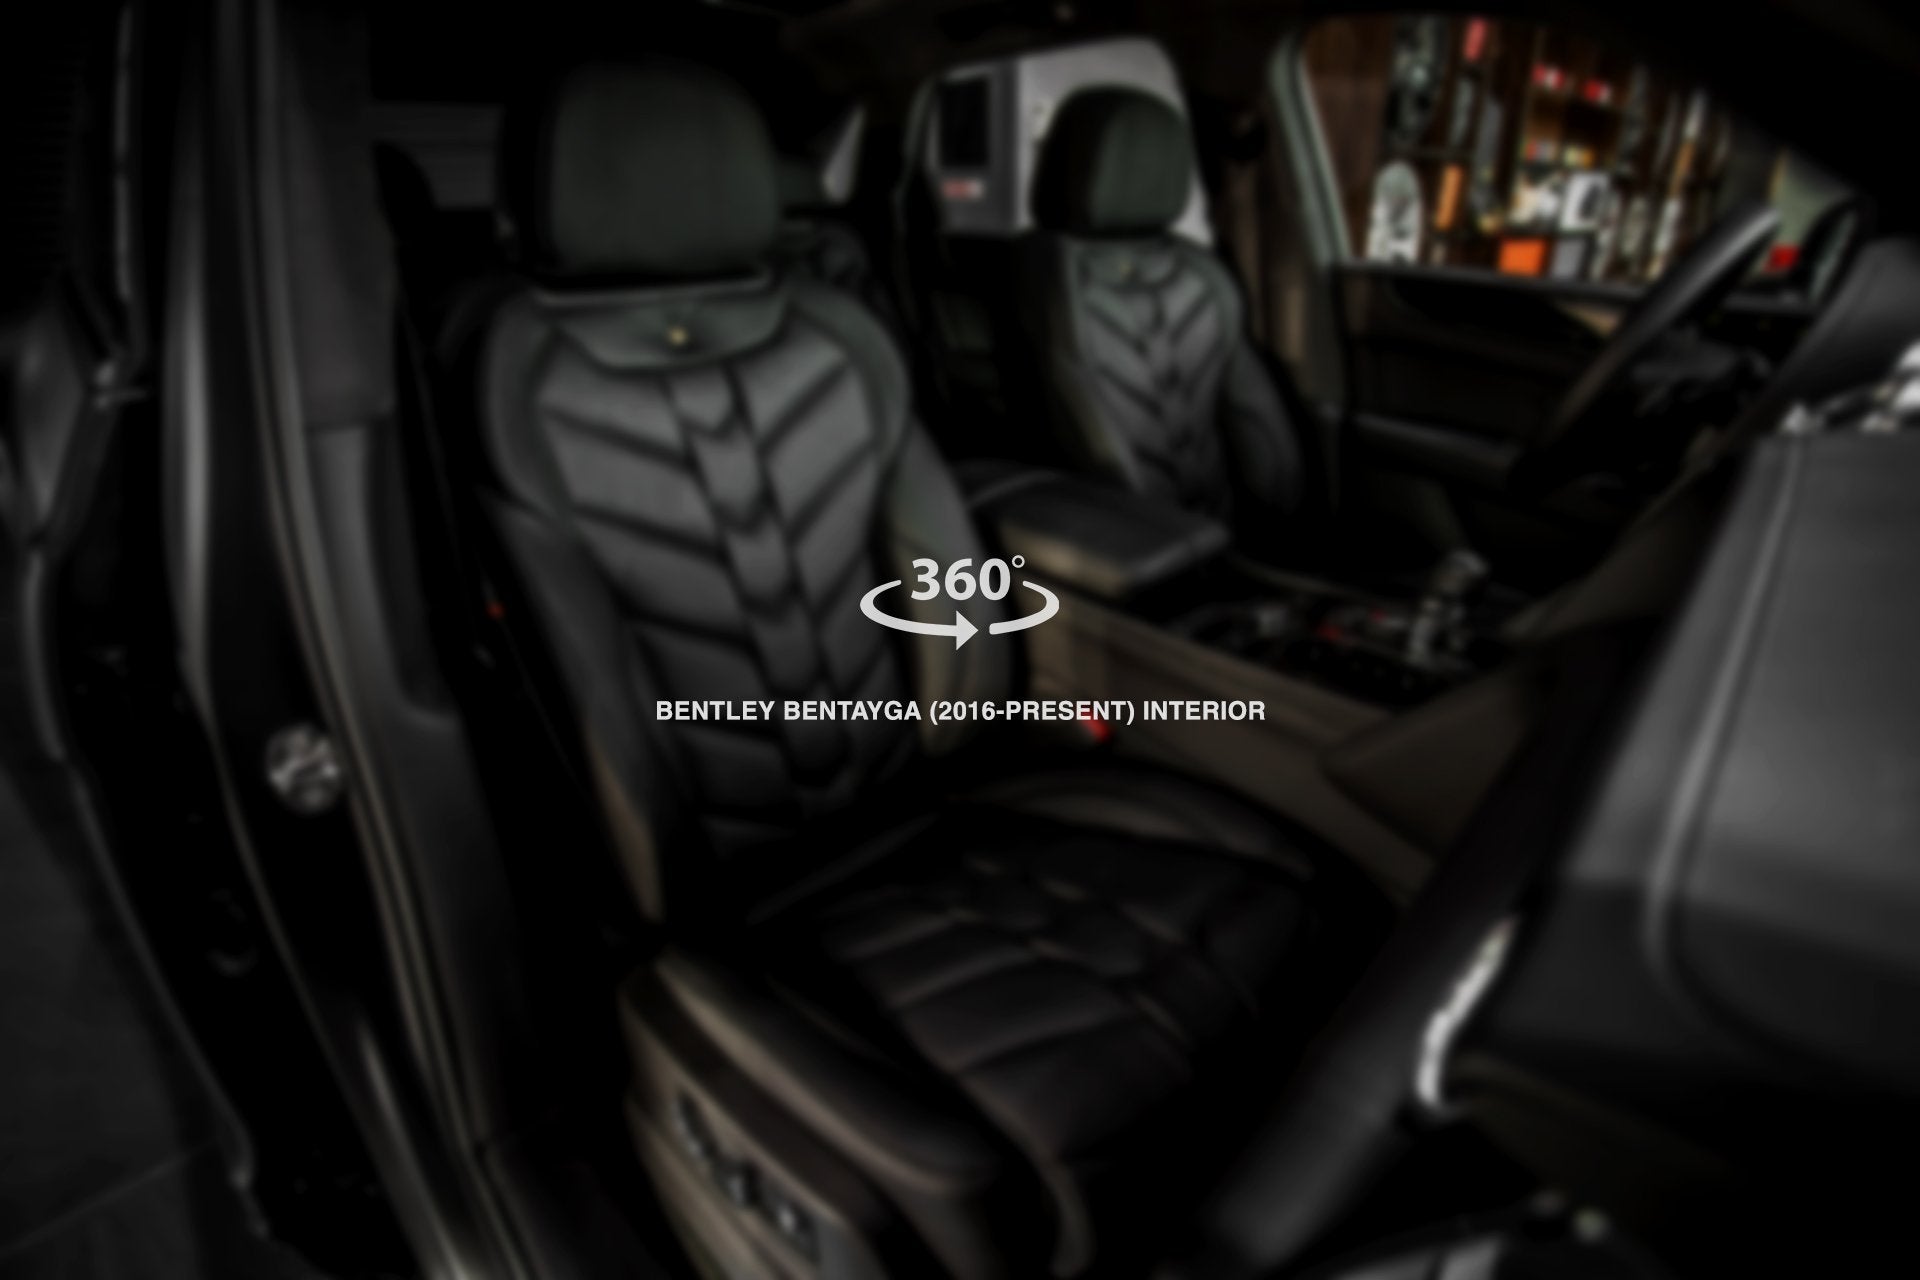 Bentley Bentayga (2016-Present) comfort Interior - 5 Seats - Project Kahn